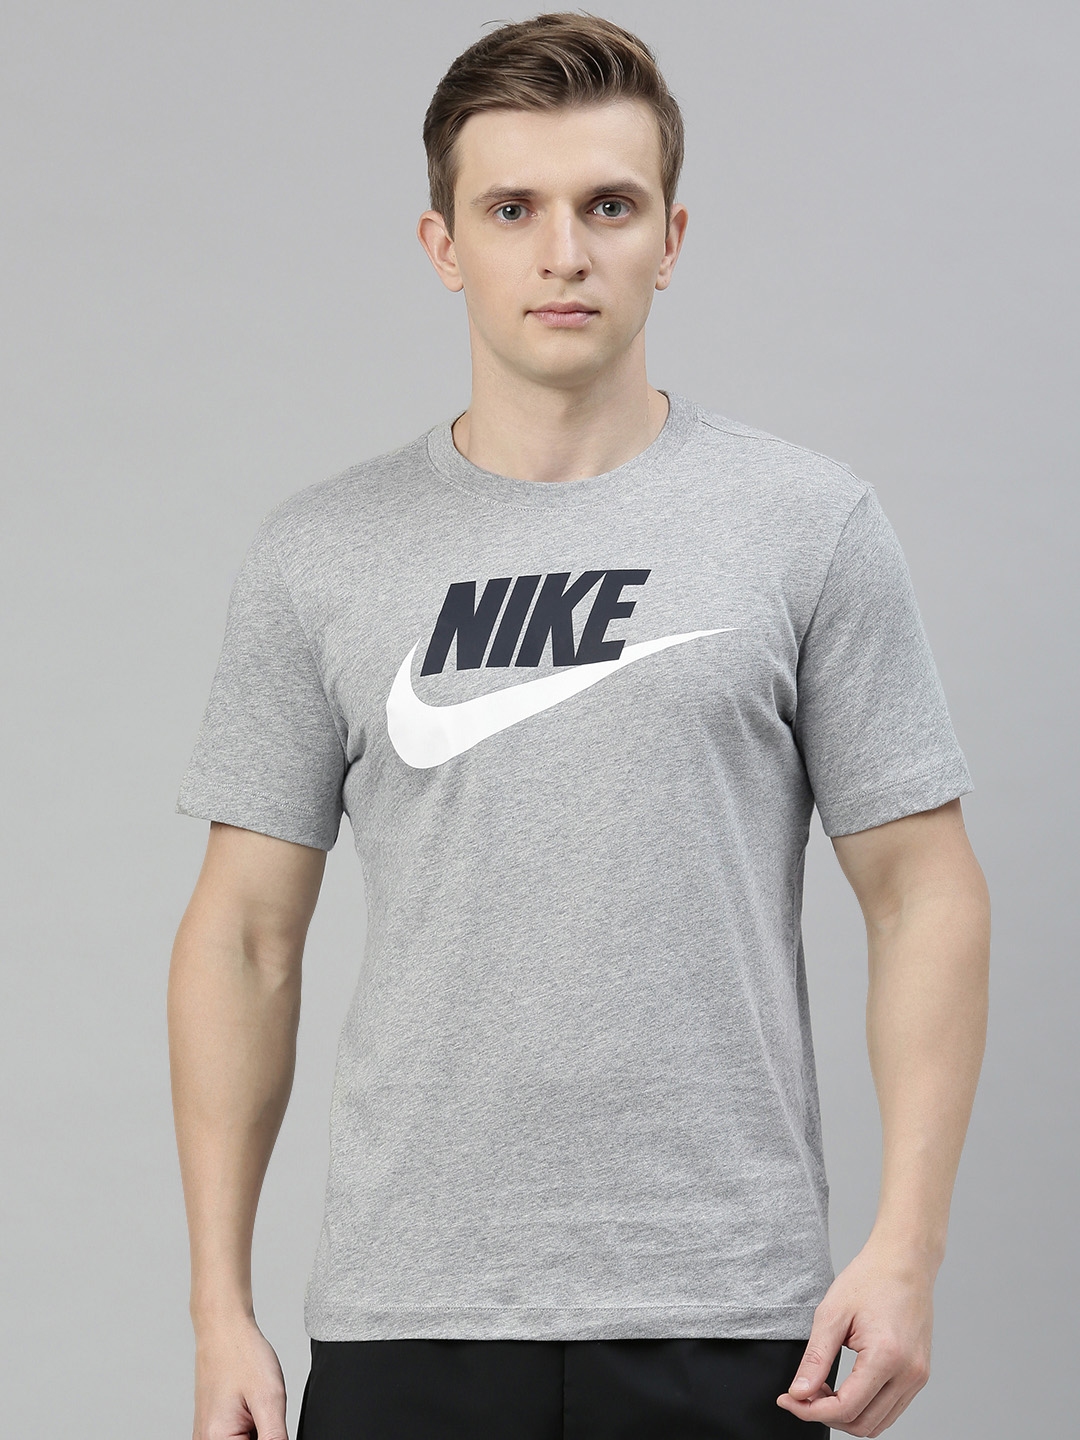 Buy Nike Men Grey Brand Logo Printed ICON FUTURA Round Neck Pure Cotton ...